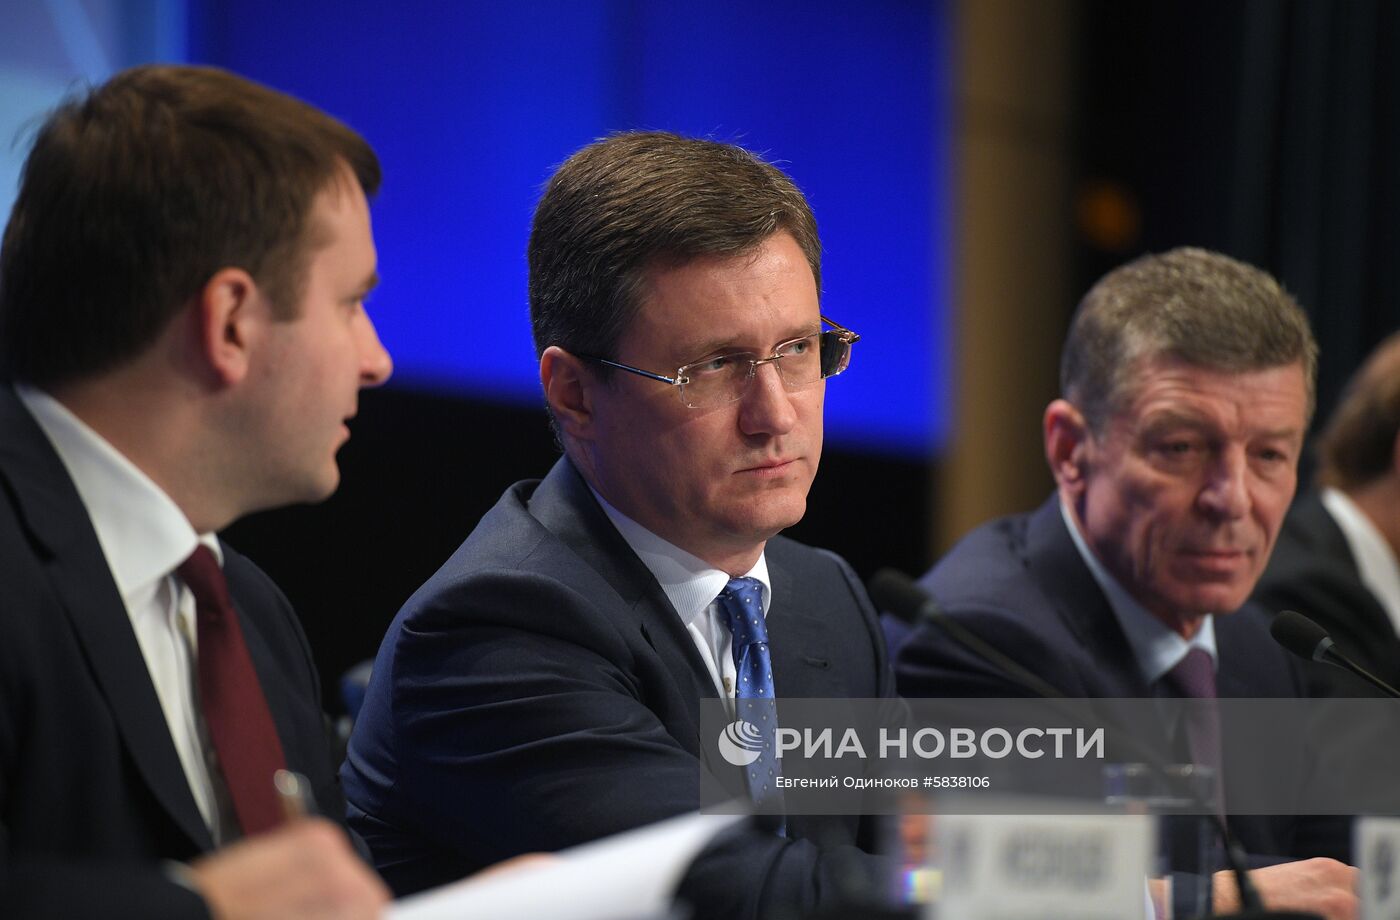 Заседание коллегии Министерства энергетики РФ